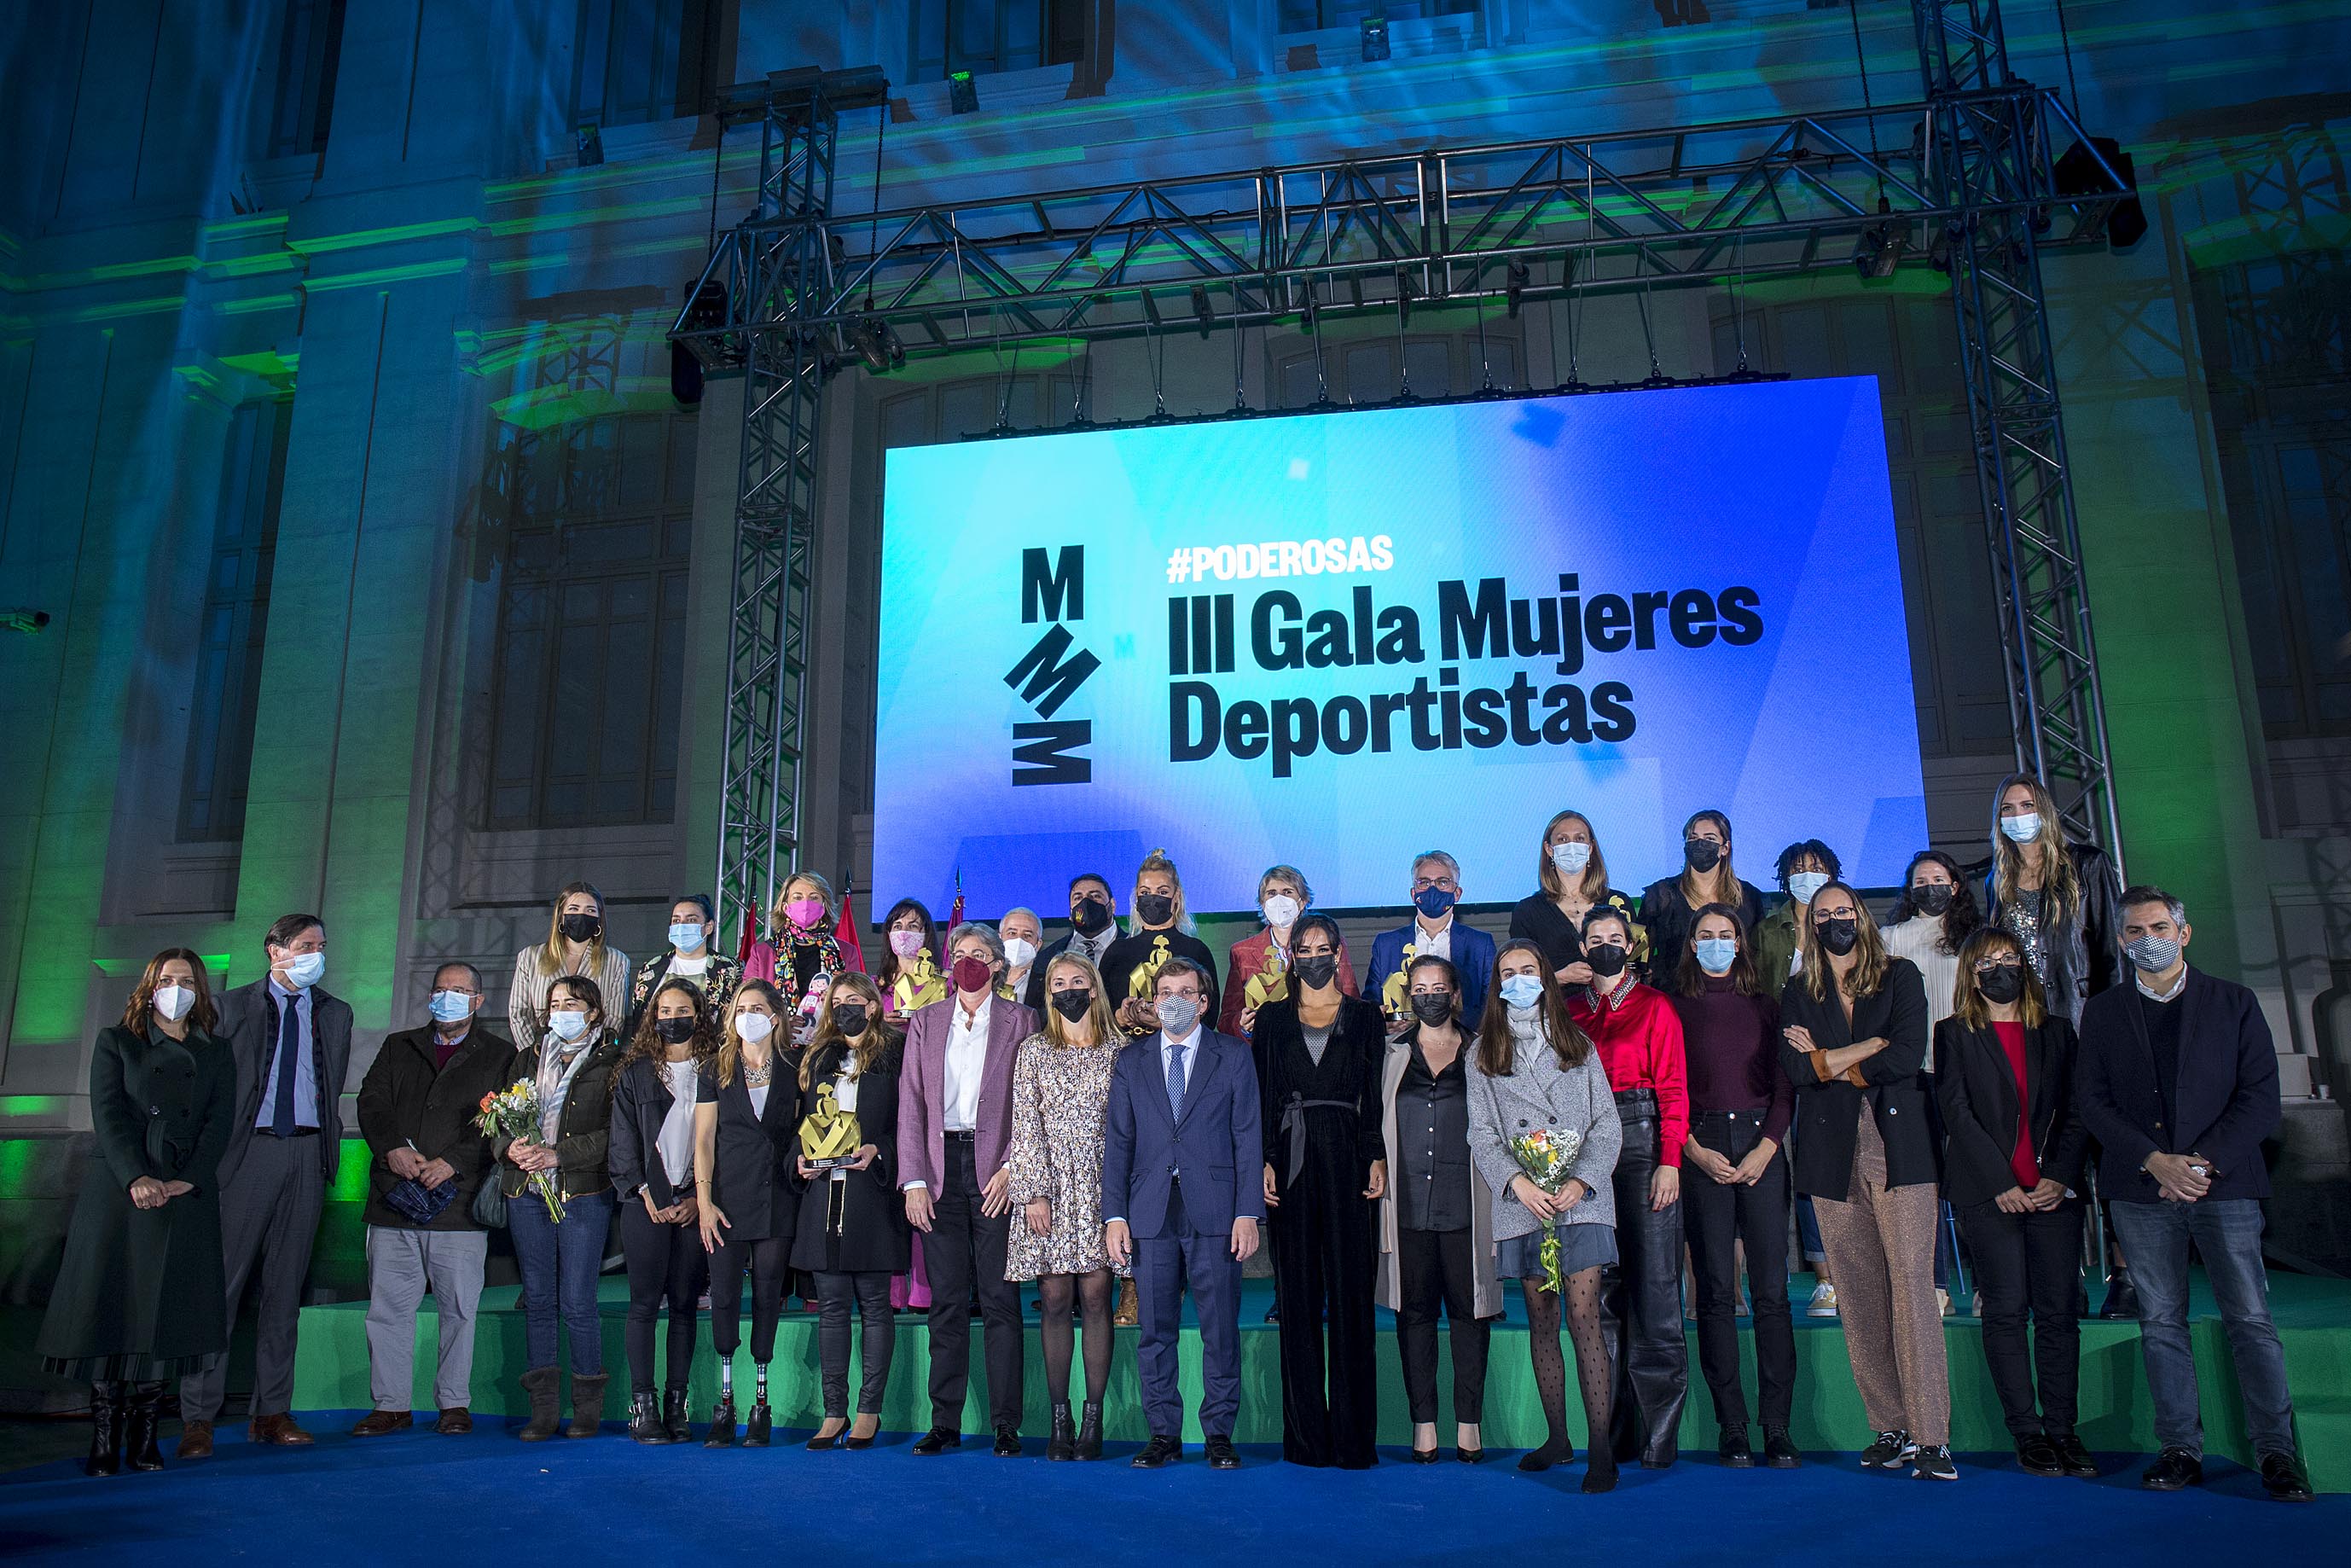 III Gala Mujeres Deportistas